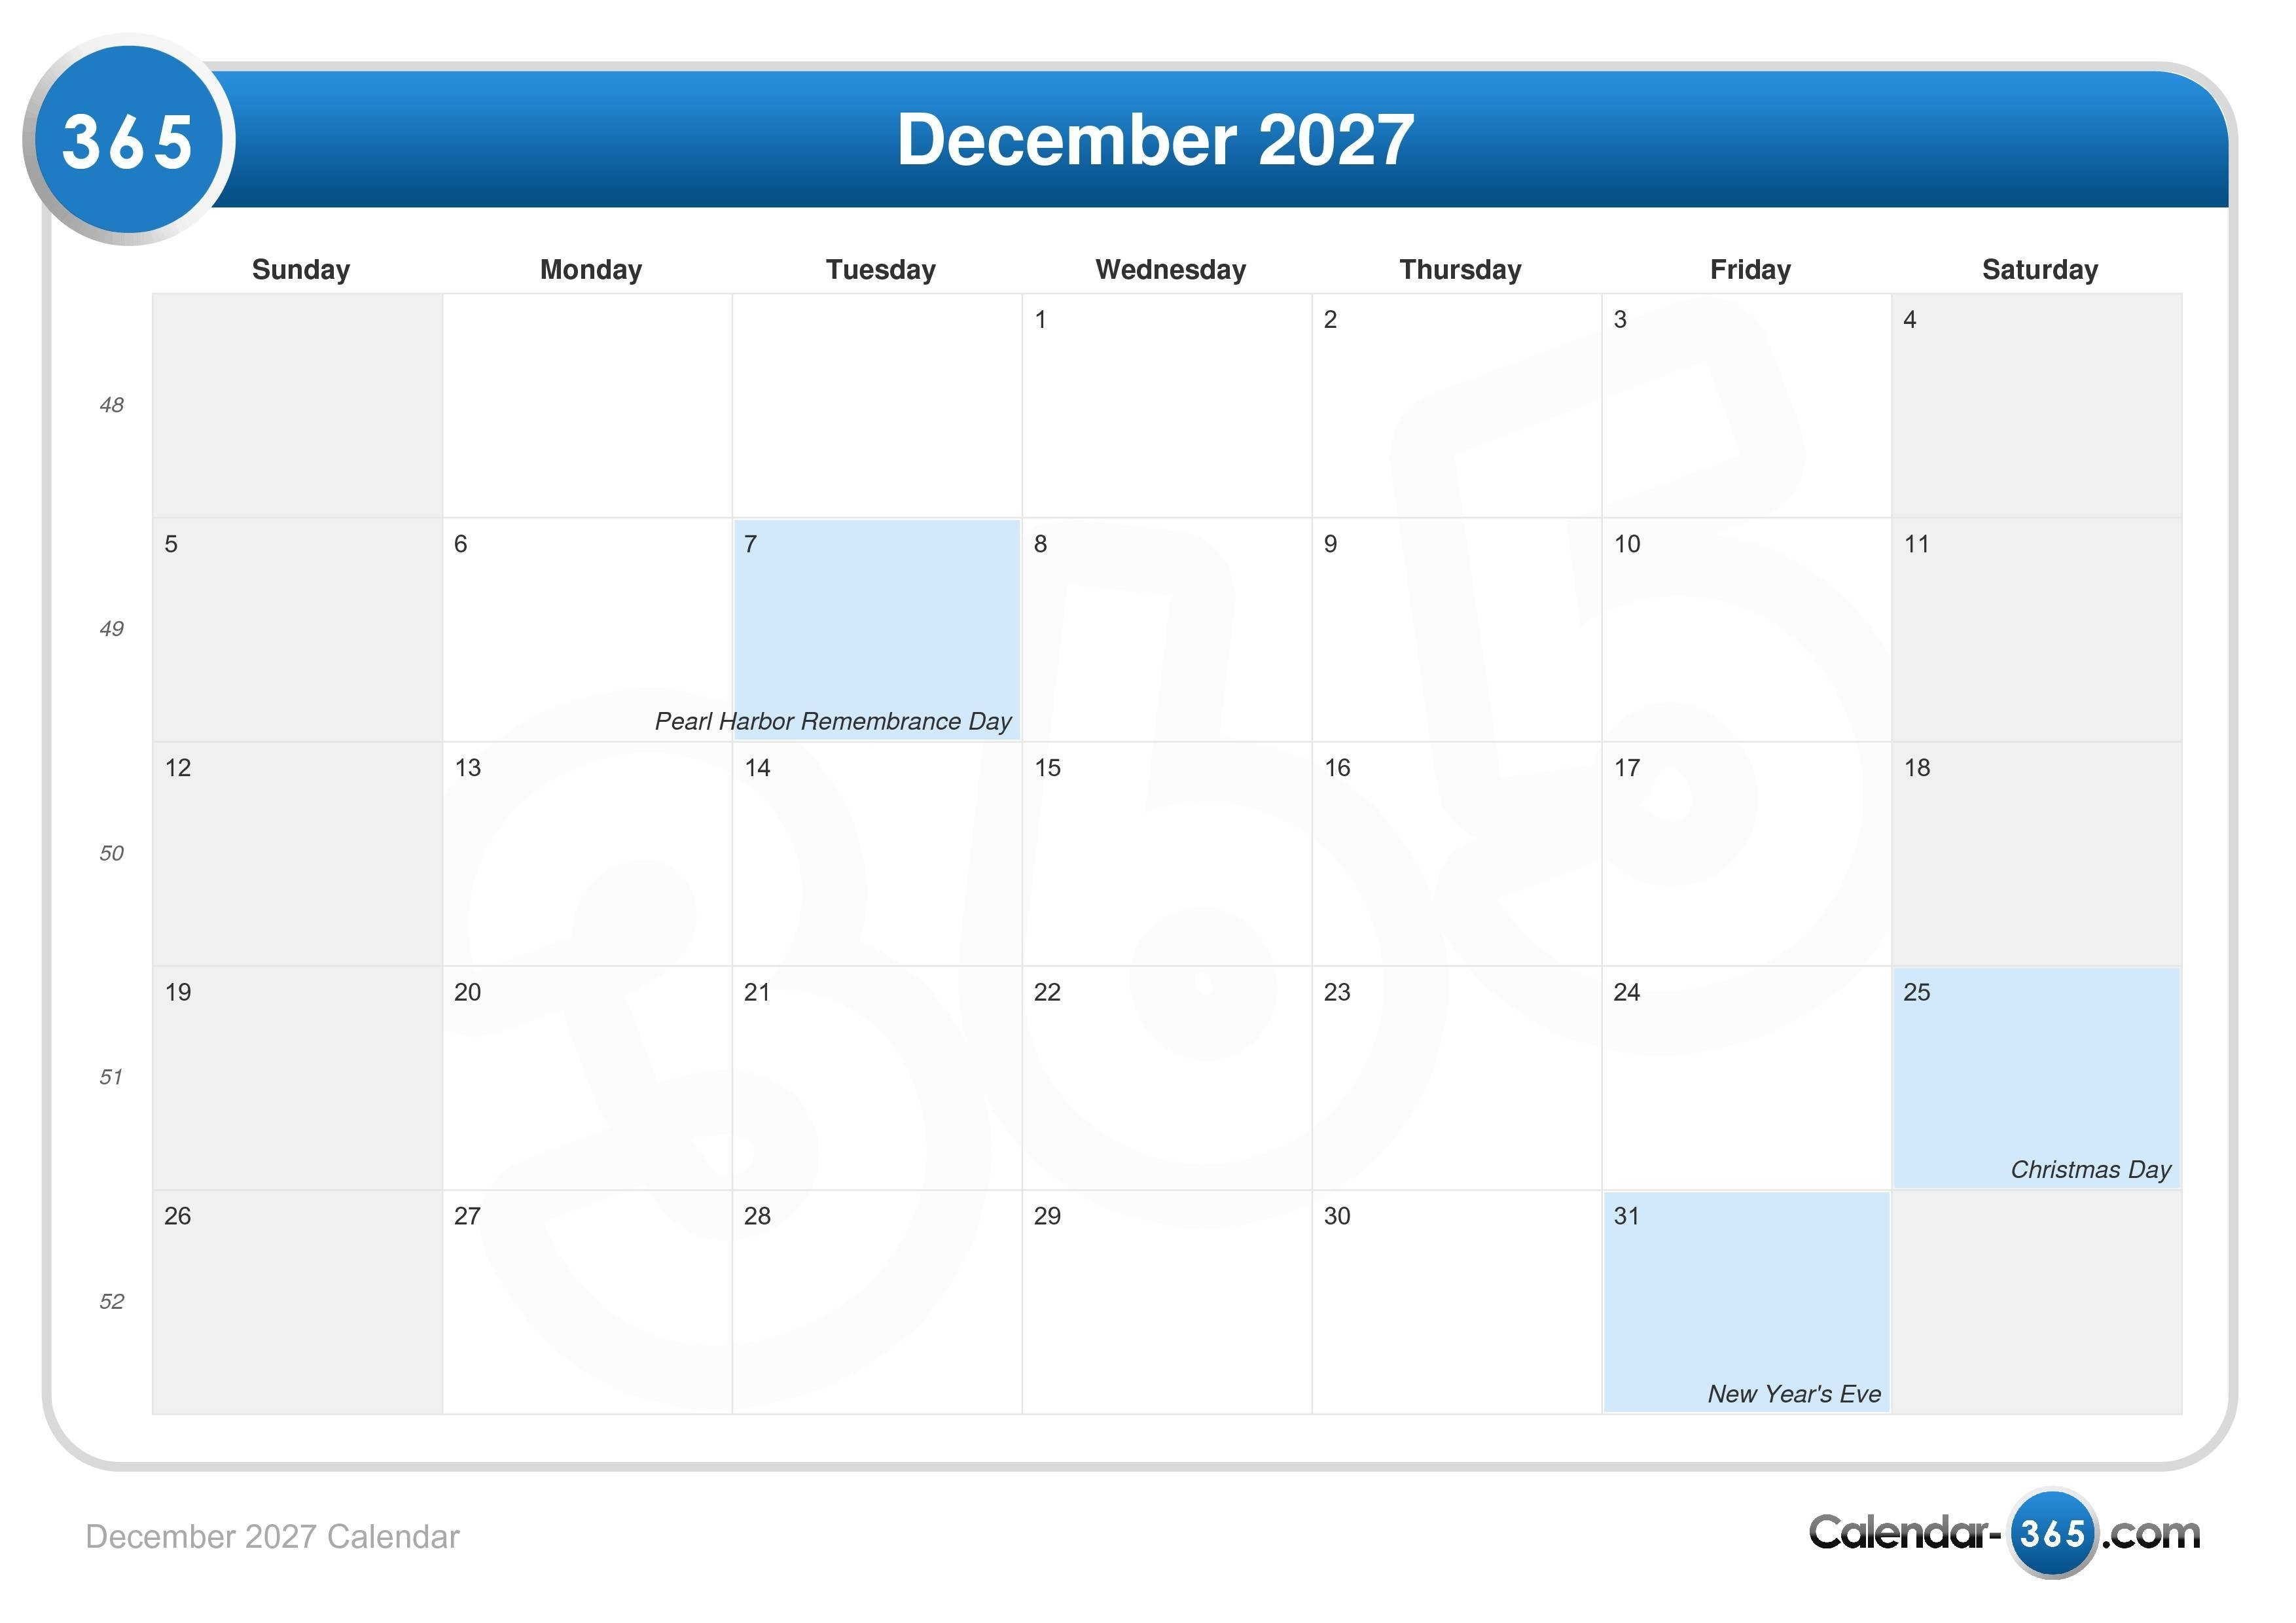 December 2027 Calendar View Calendar Of December 2021